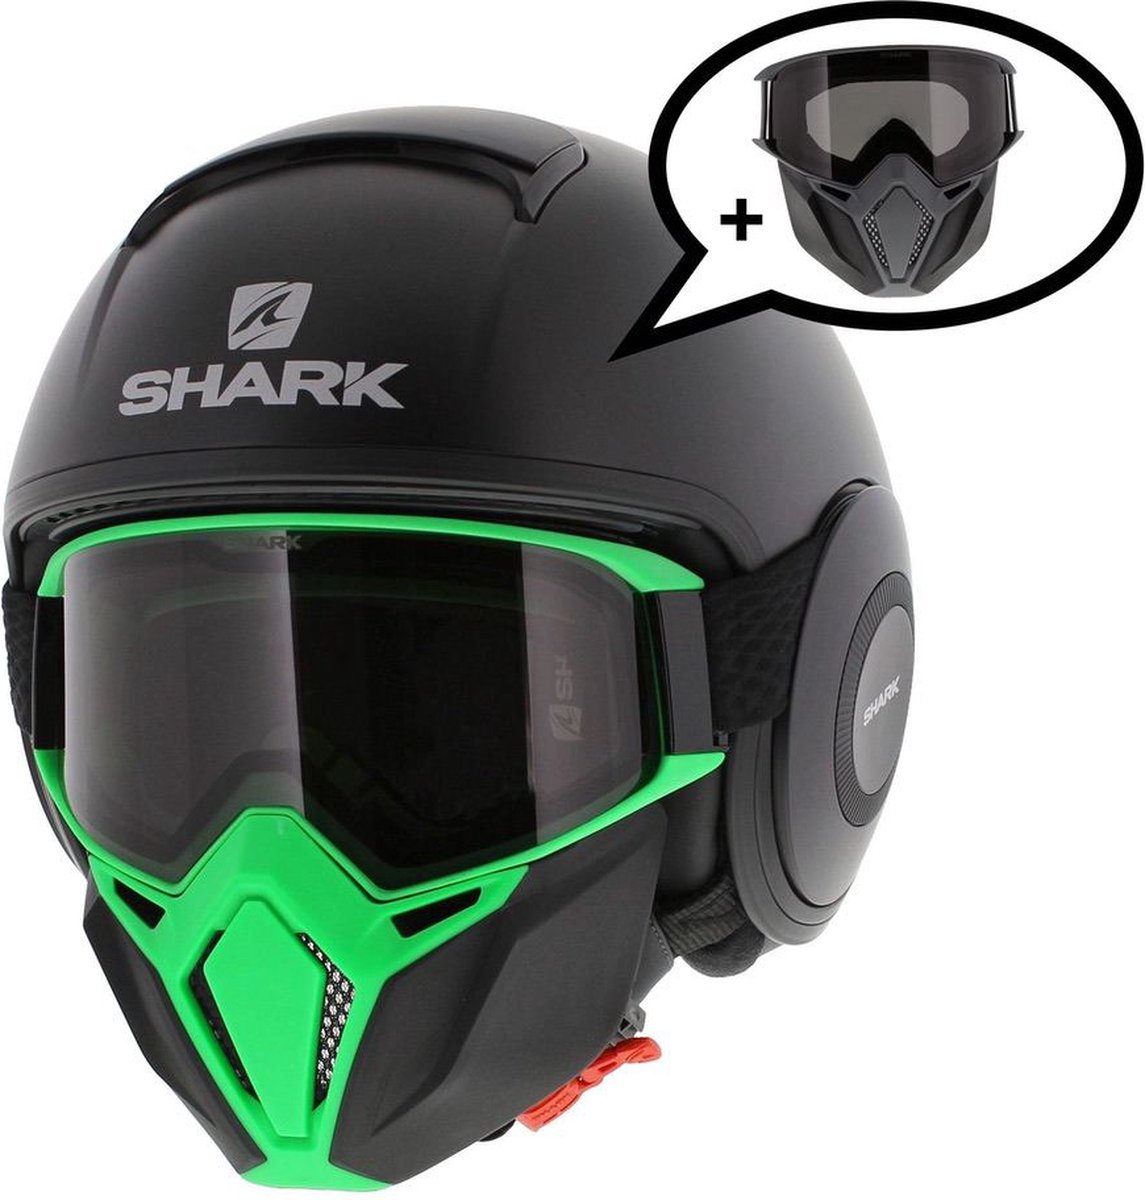 Shark Street Drak helm mat zwart groen XS - Special Edition met gratis extra zwart antraciet mondstuk